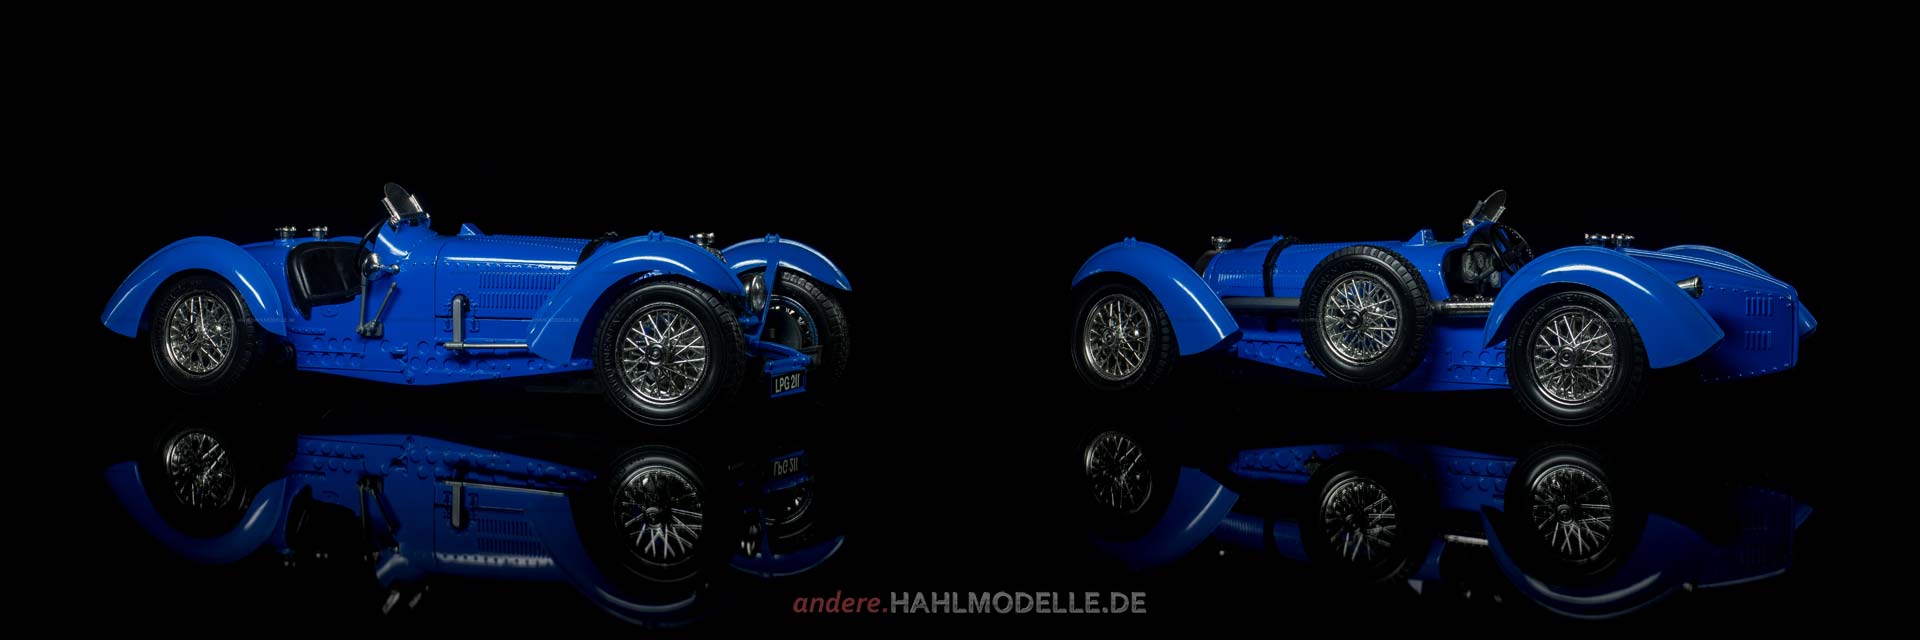 Bugatti Type 59 | Roadster | Bburago | 1:18 | www.andere.hahlmodelle.de